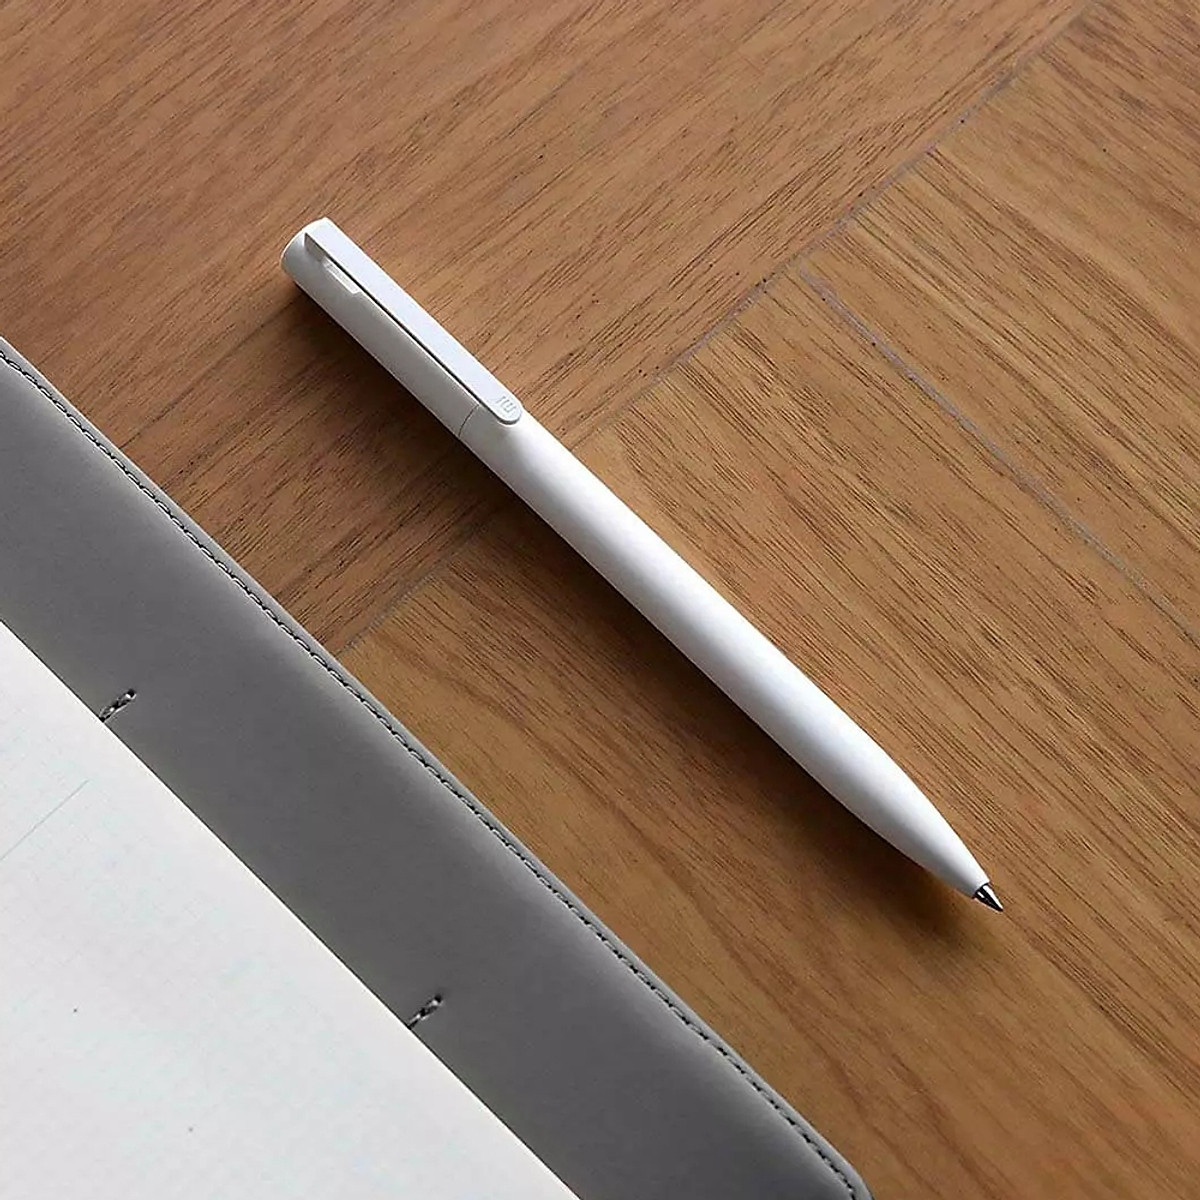 Bút Gel Xiaomi Viết Chữ Đẹp: Mang đến cho người dùng sự tiện lợi và dễ dàng trong việc viết và vẽ, bút Gel Xiaomi sẽ là người bạn đồng hành tuyệt vời cho bạn. Với thiết kế đơn giản nhưng tinh tế, tính năng tuyệt vời và giá cả phải chăng, bạn sẽ không thể bỏ lỡ sản phẩm tuyệt vời này! Hãy xem những bức ảnh độc đáo nhất với bút Gel Xiaomi!